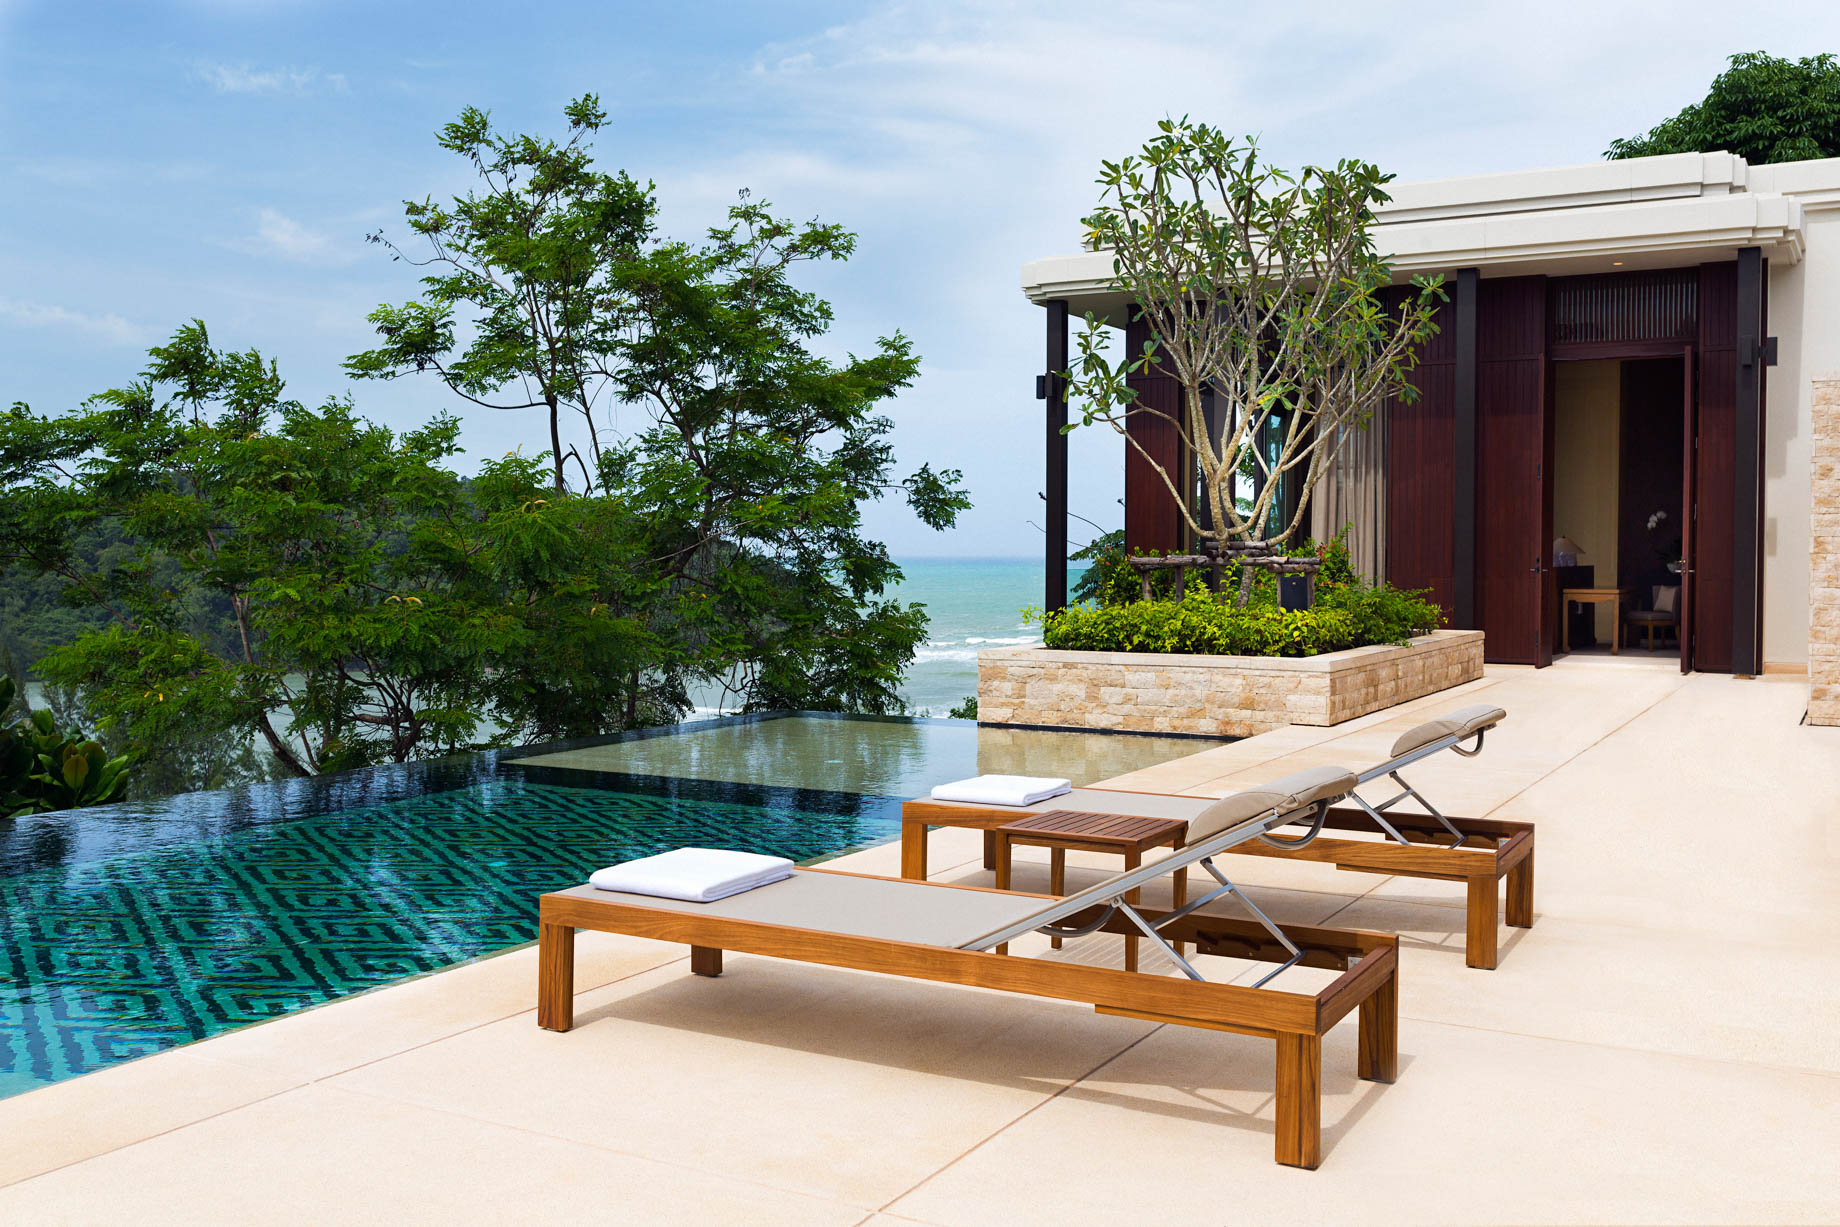 Anantara Layan Phuket Resort & Residences – Thailand – Residence Pool Deck Terrace